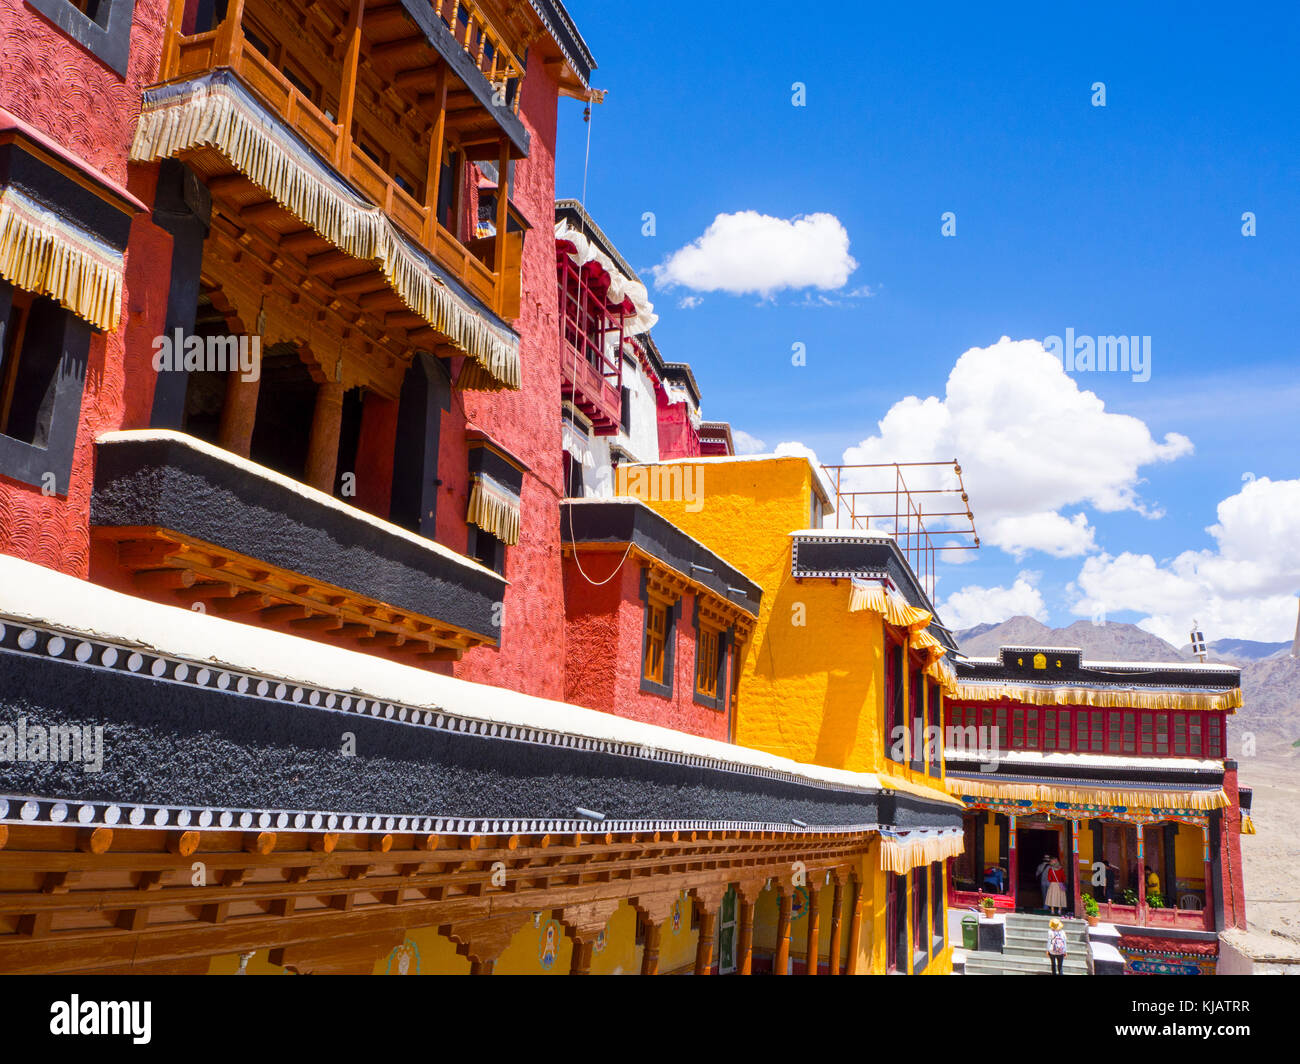 Monastère bouddhiste au Ladakh Inde Banque D'Images